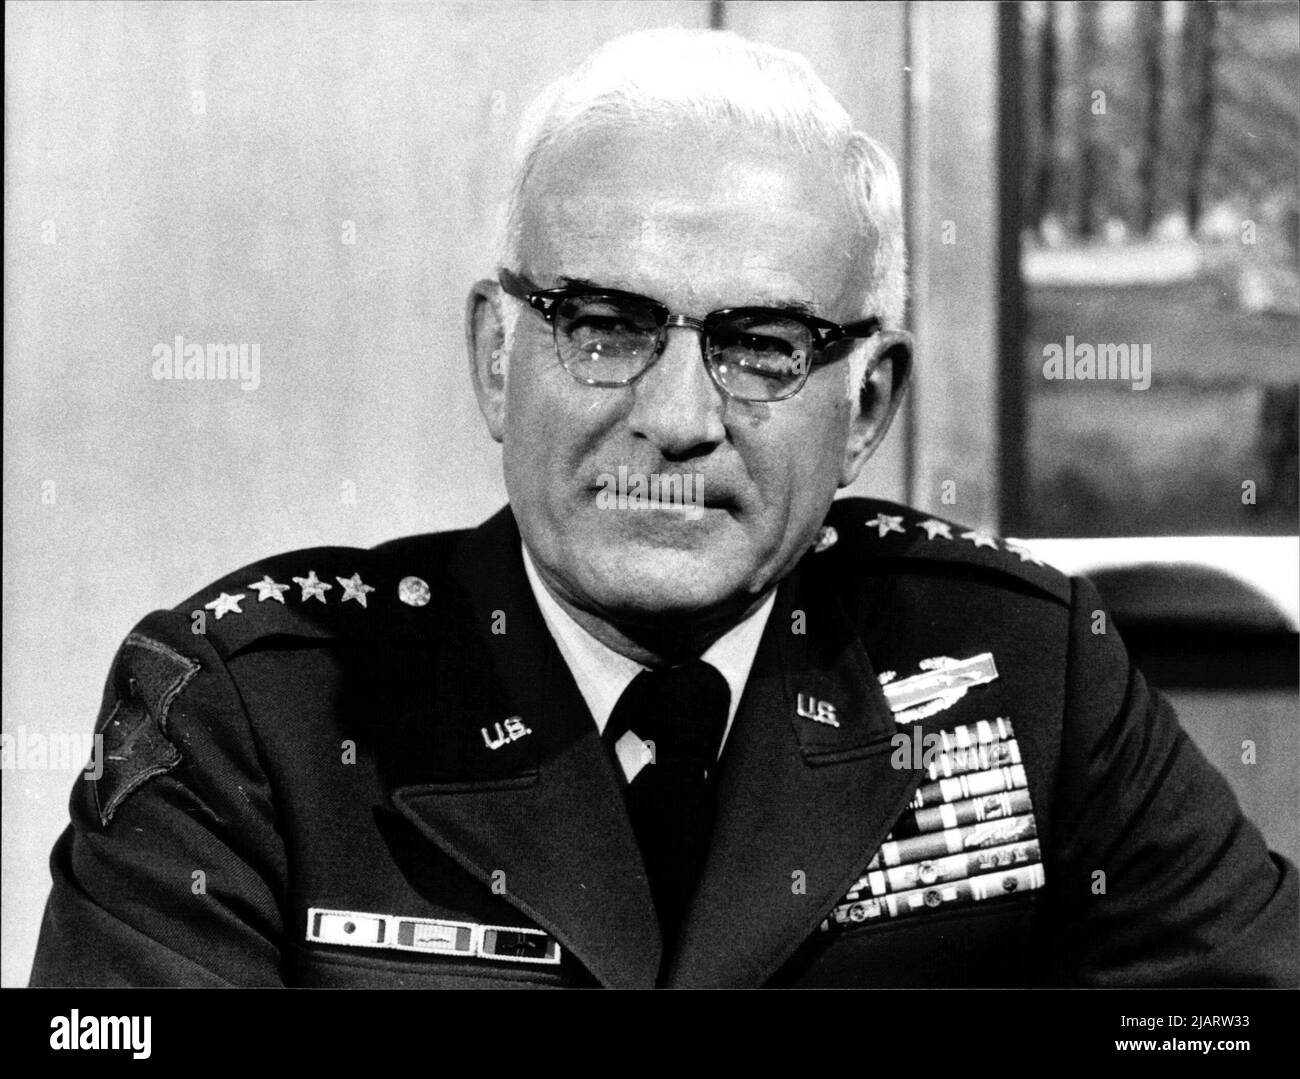 Fotografie des US-amerikanischen Generals Bernard William Rogers, Oberbefehlshaber der Alliierten Streitkräfte in Europa. Stock Photo